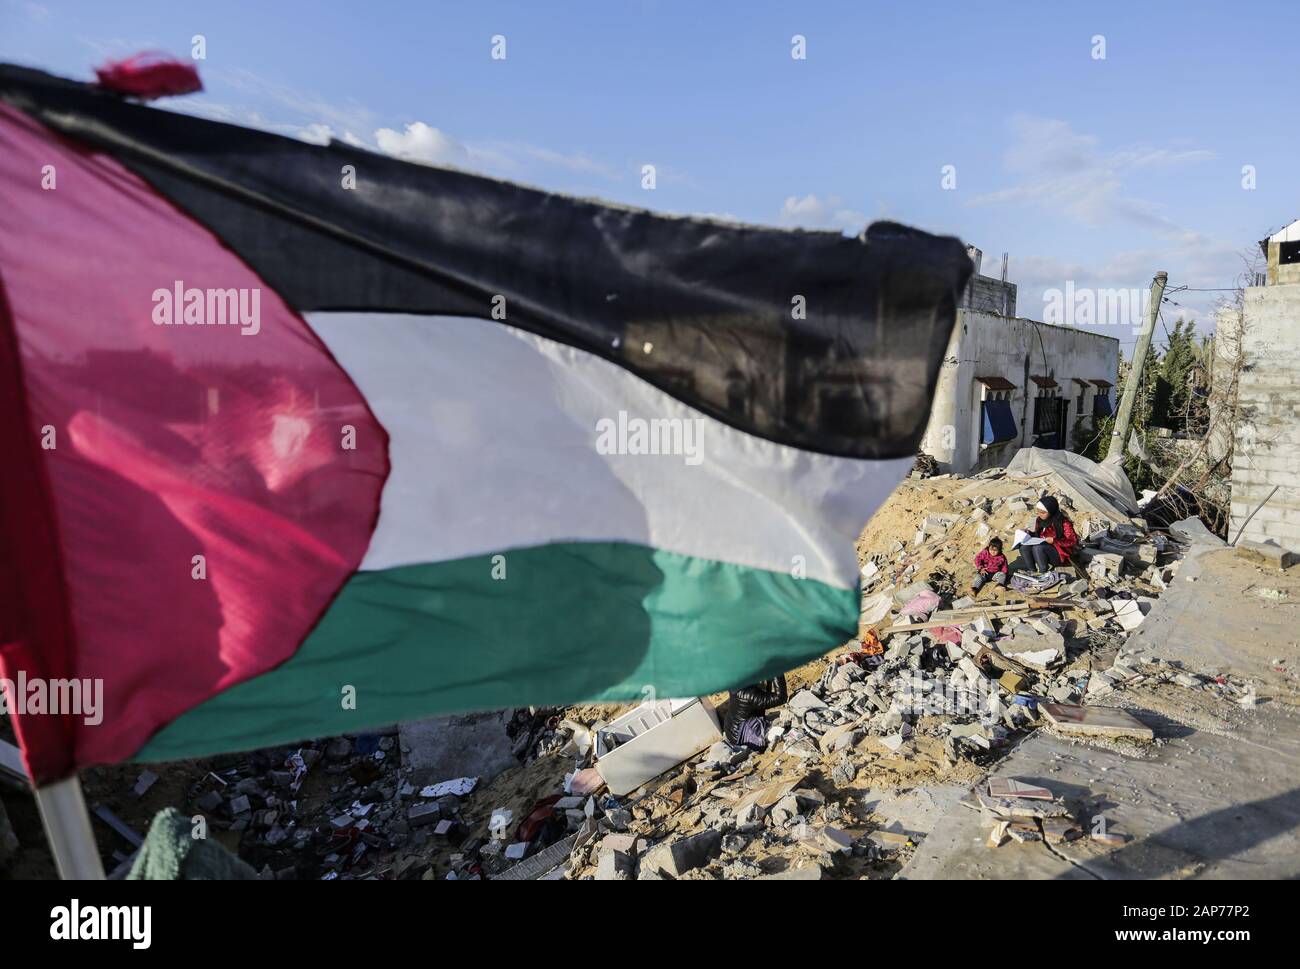 La ciudad de Gaza, Palestina. 19 ene, 2020. Escombros en Hamouda Abu Amra la casa destruida.La familia Abu Umrah que consiste de 19 personas perdieron sus cinco pisos casa después de una incursión israelí en Gaza el 13 de noviembre de 2019. Crédito: Mahmoud Issa/SOPA Images/Zuma alambre/Alamy Live News Foto de stock